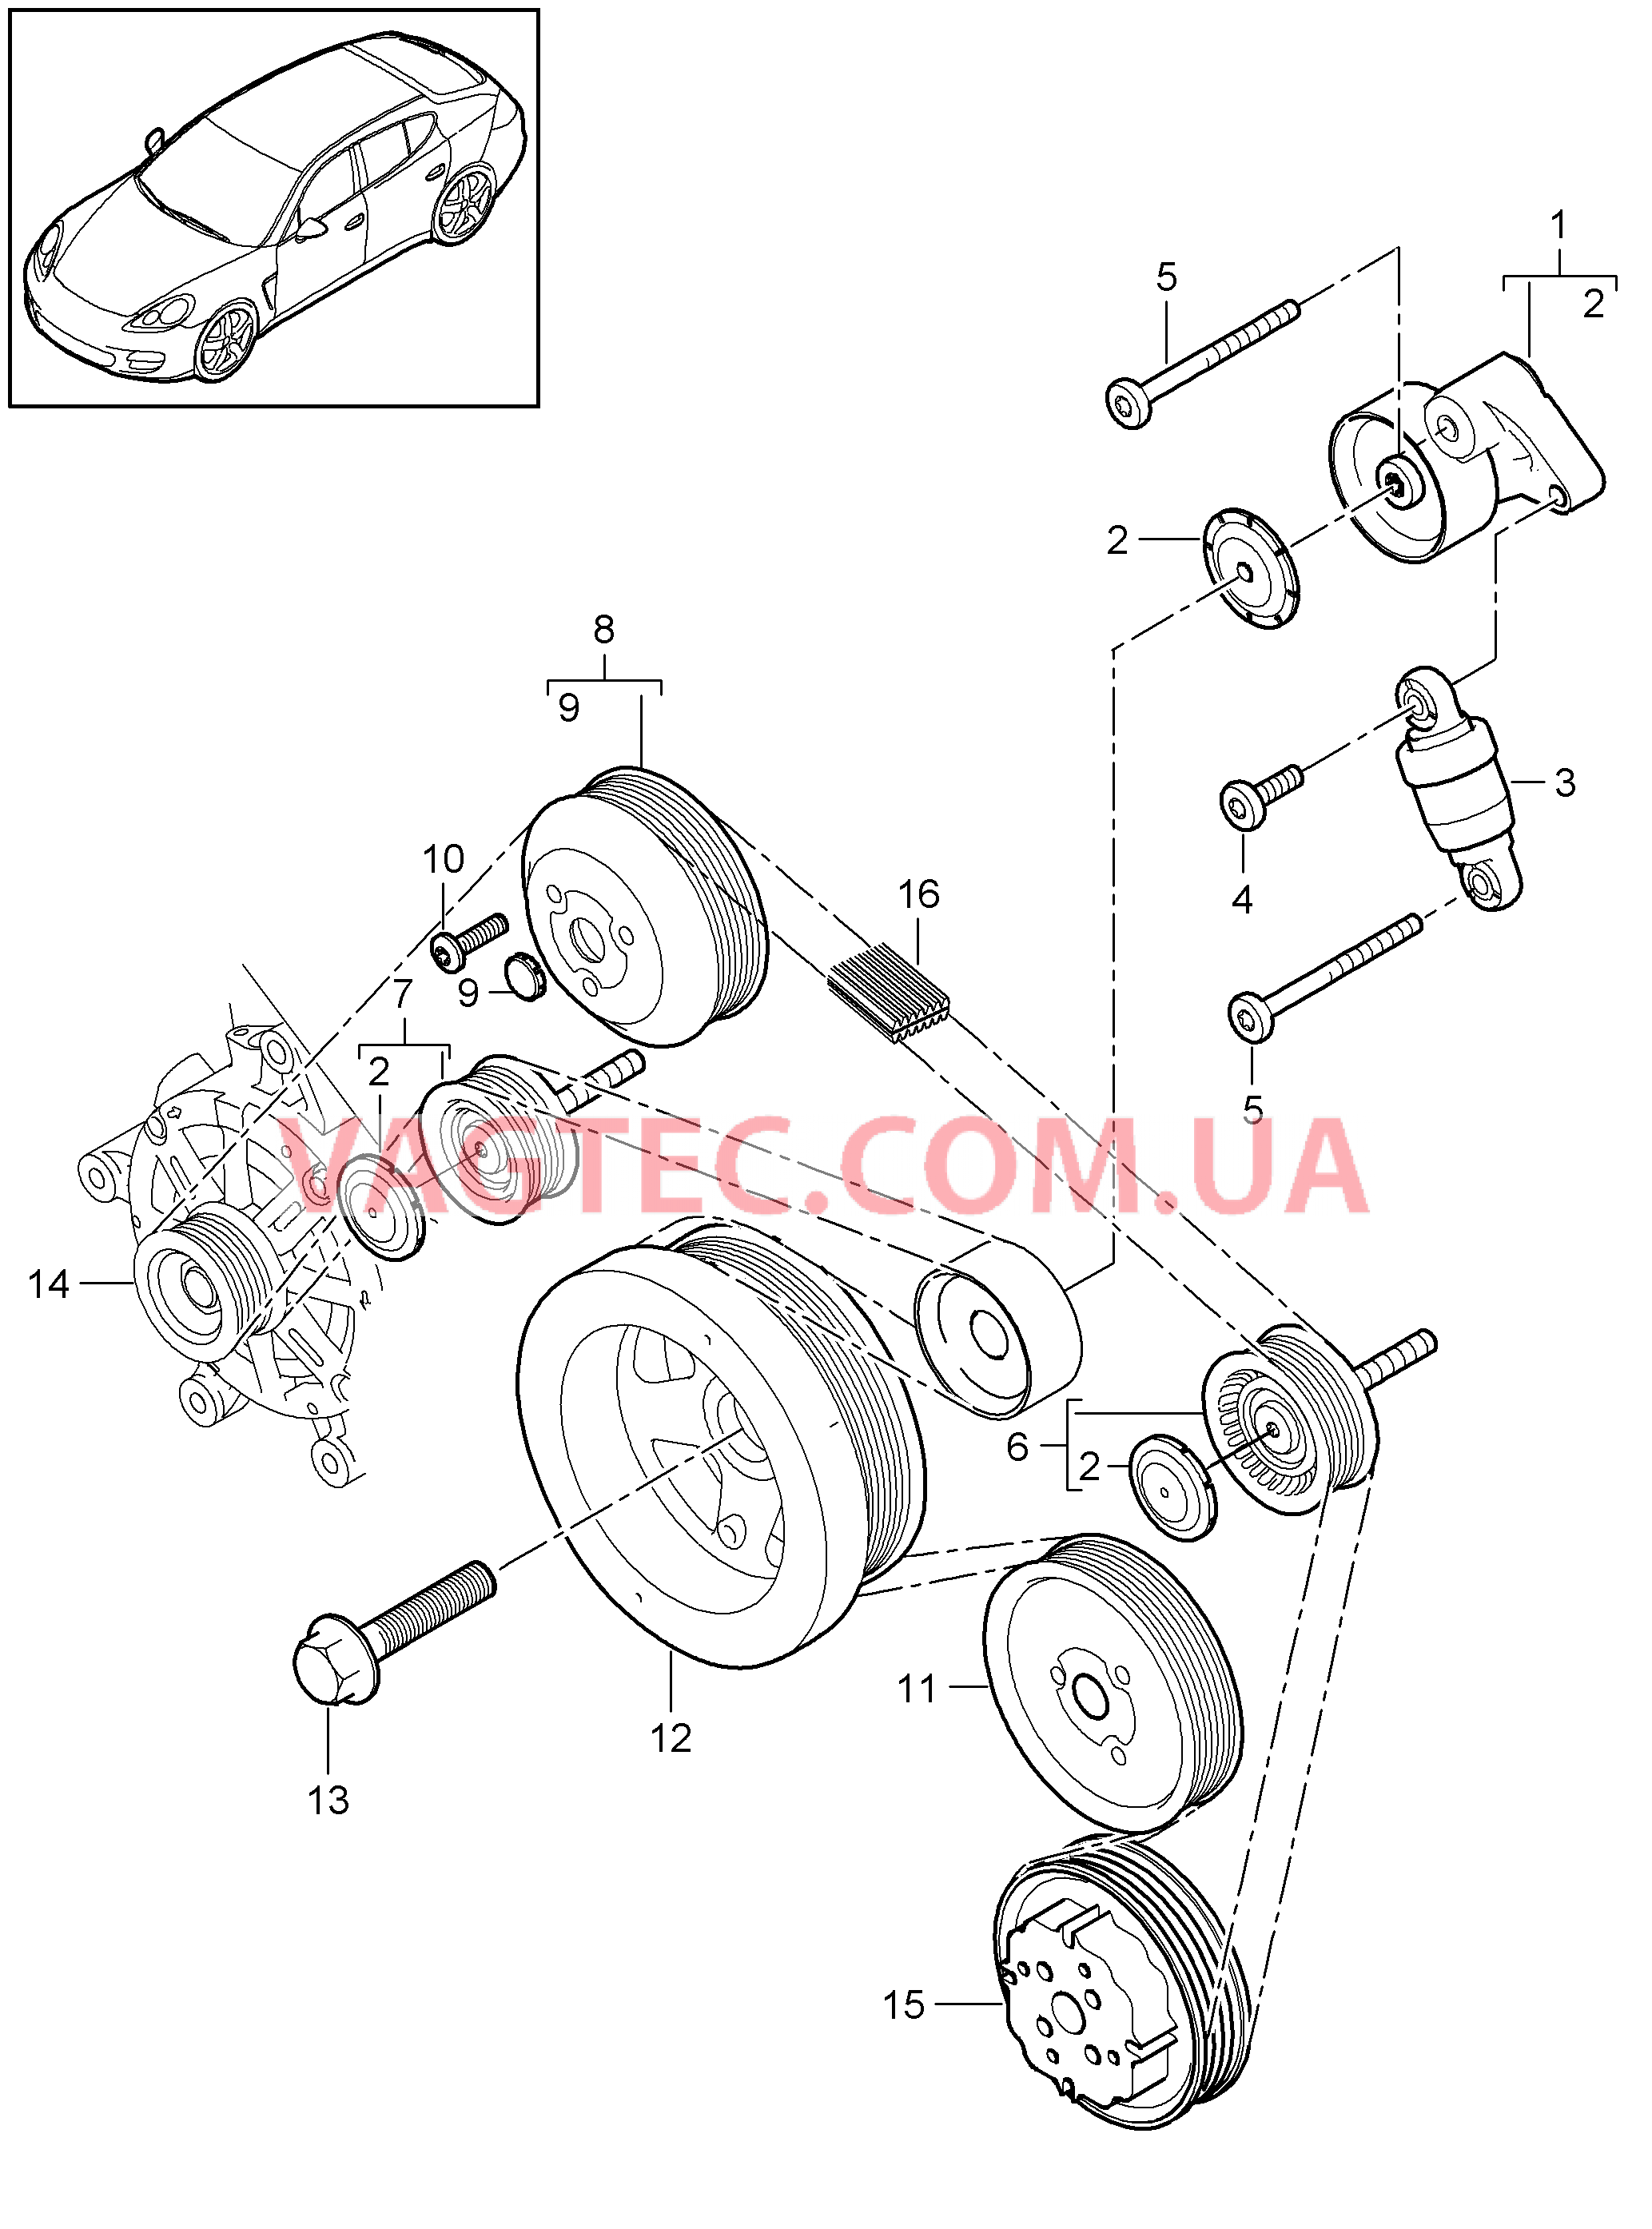 102-070 Натяжитель ремня, Ременный привод
						
						MCW.AA, MCX.NA, M46.20/40 для PORSCHE Panamera 2010-2016